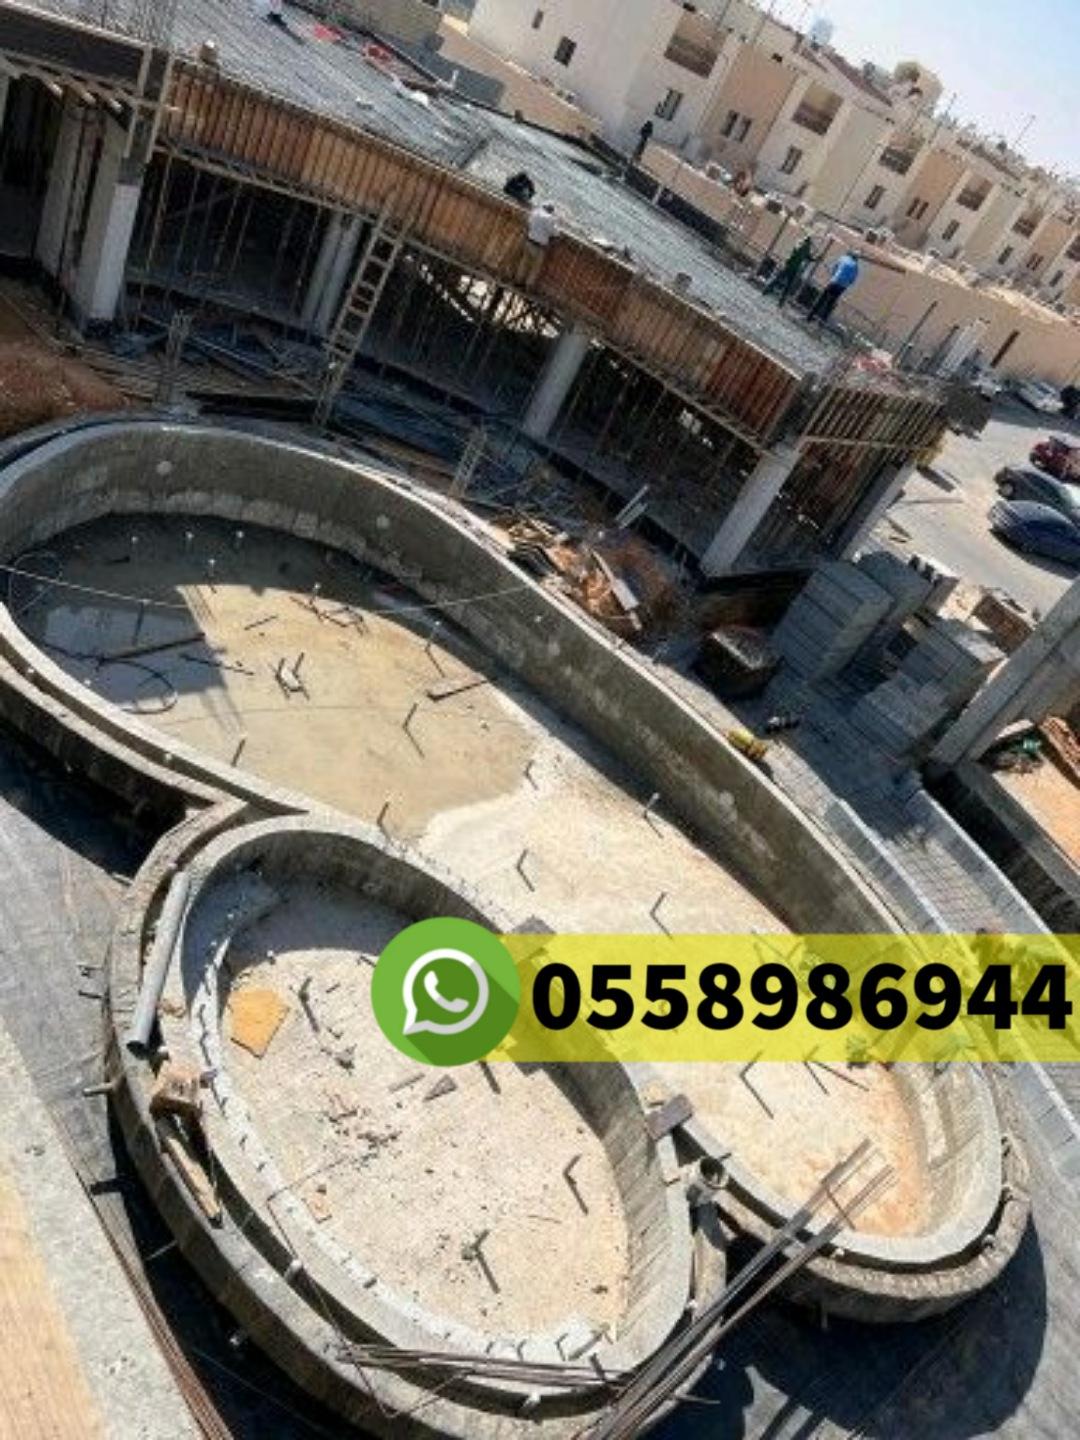 مقاول معماري في حي الحمراء جدة جوال 0558986944 680575235